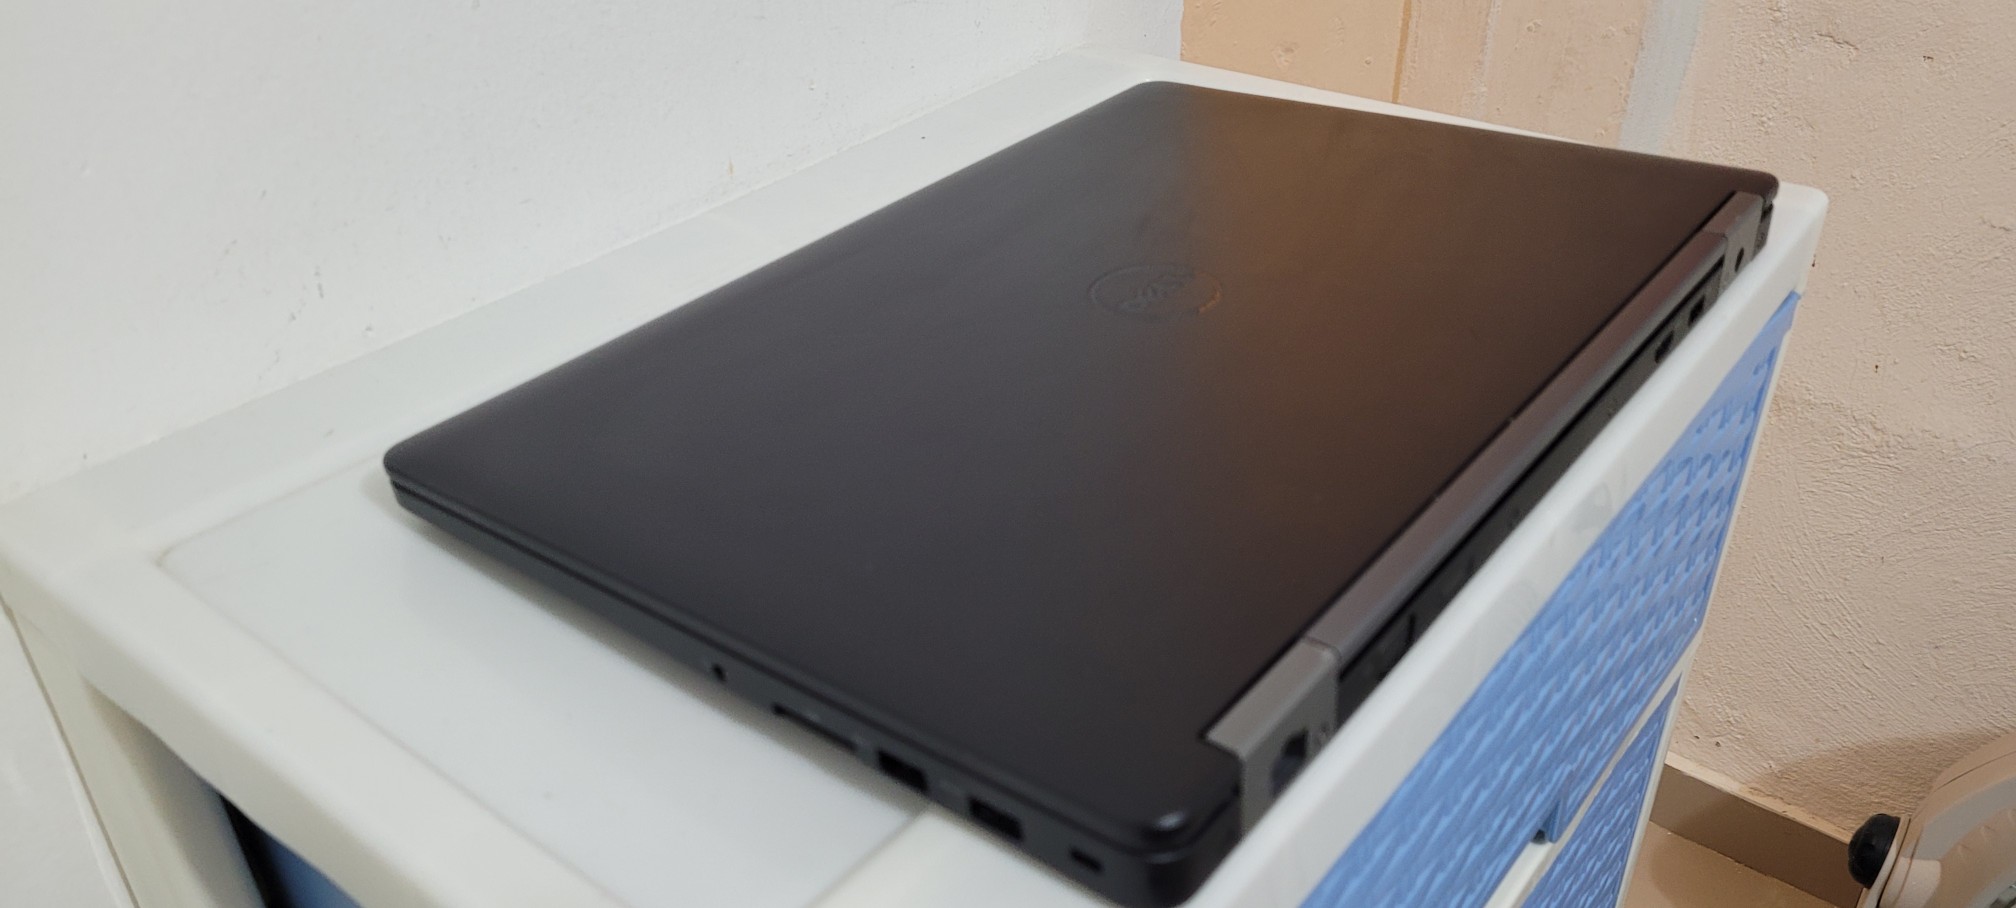 computadoras y laptops - Dell 5570 17 Pulg Core i5 6ta Ram 8gb Ddr4 Disco 128gb Y 1000gb Full 2